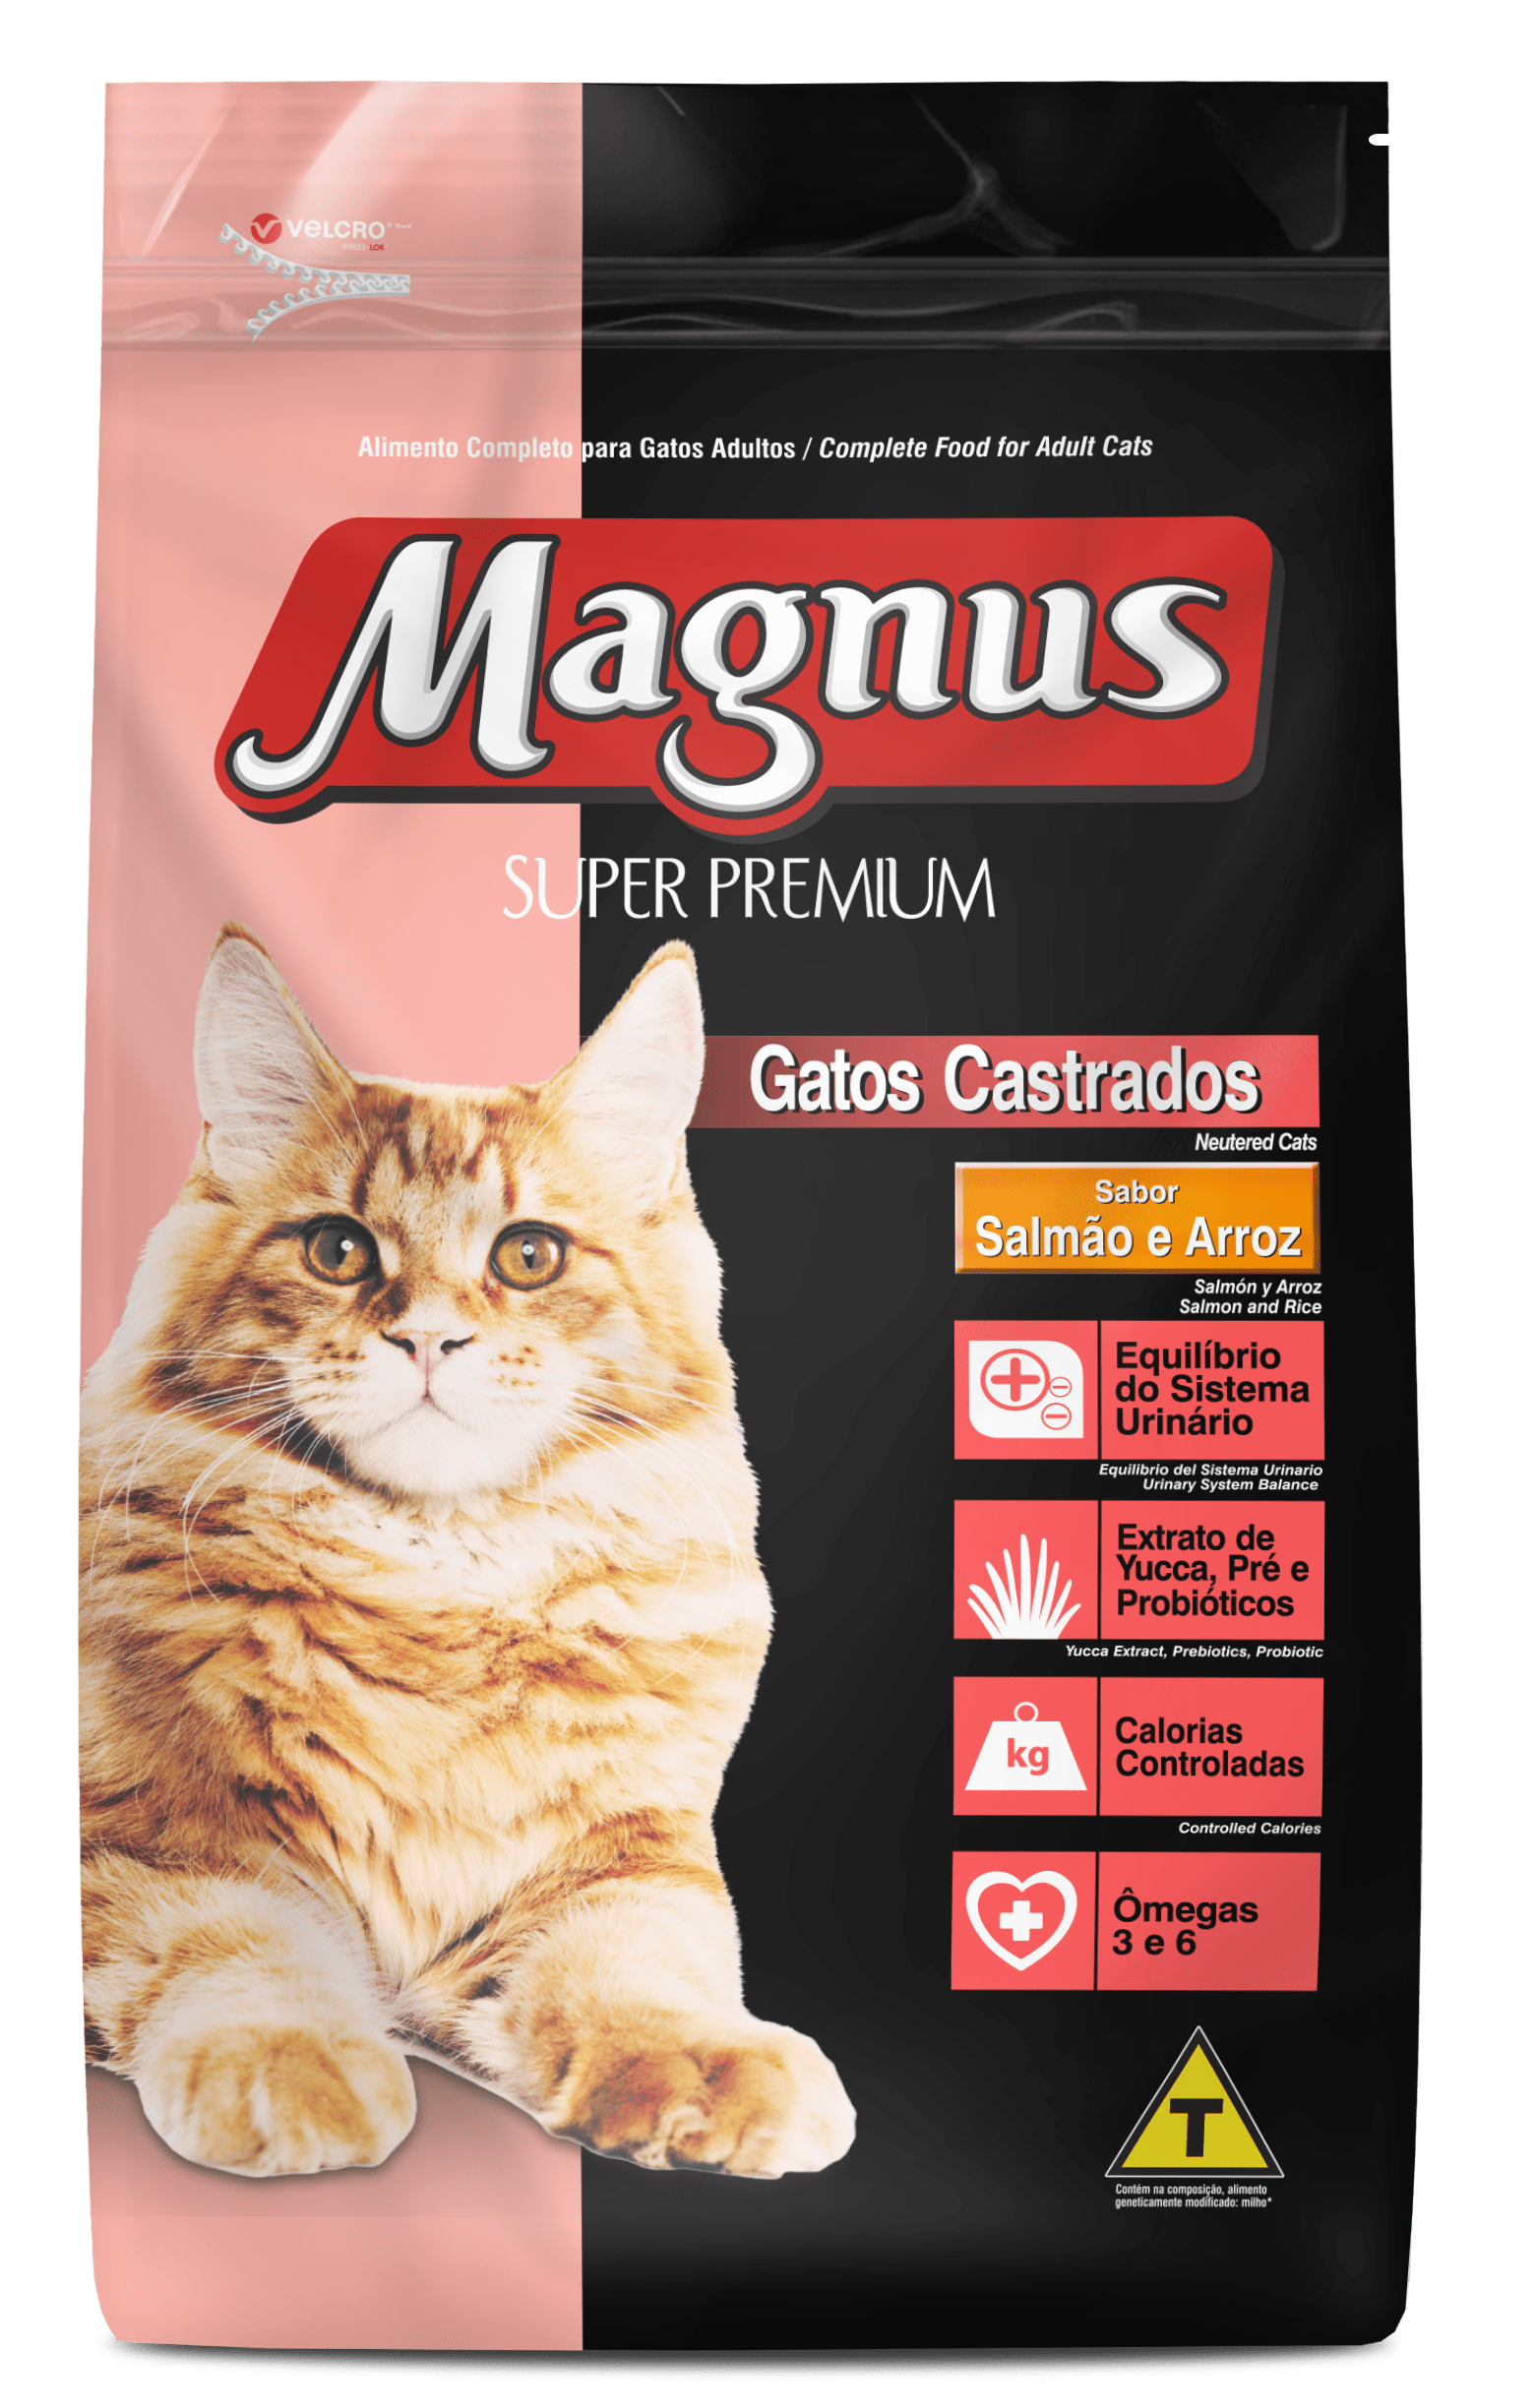 Metáfora crema Extensamente Magnus Super Premium Gatos Castrados Sabor Salmón y Arroz - Adimax.  Alimentos para cães e gatos.